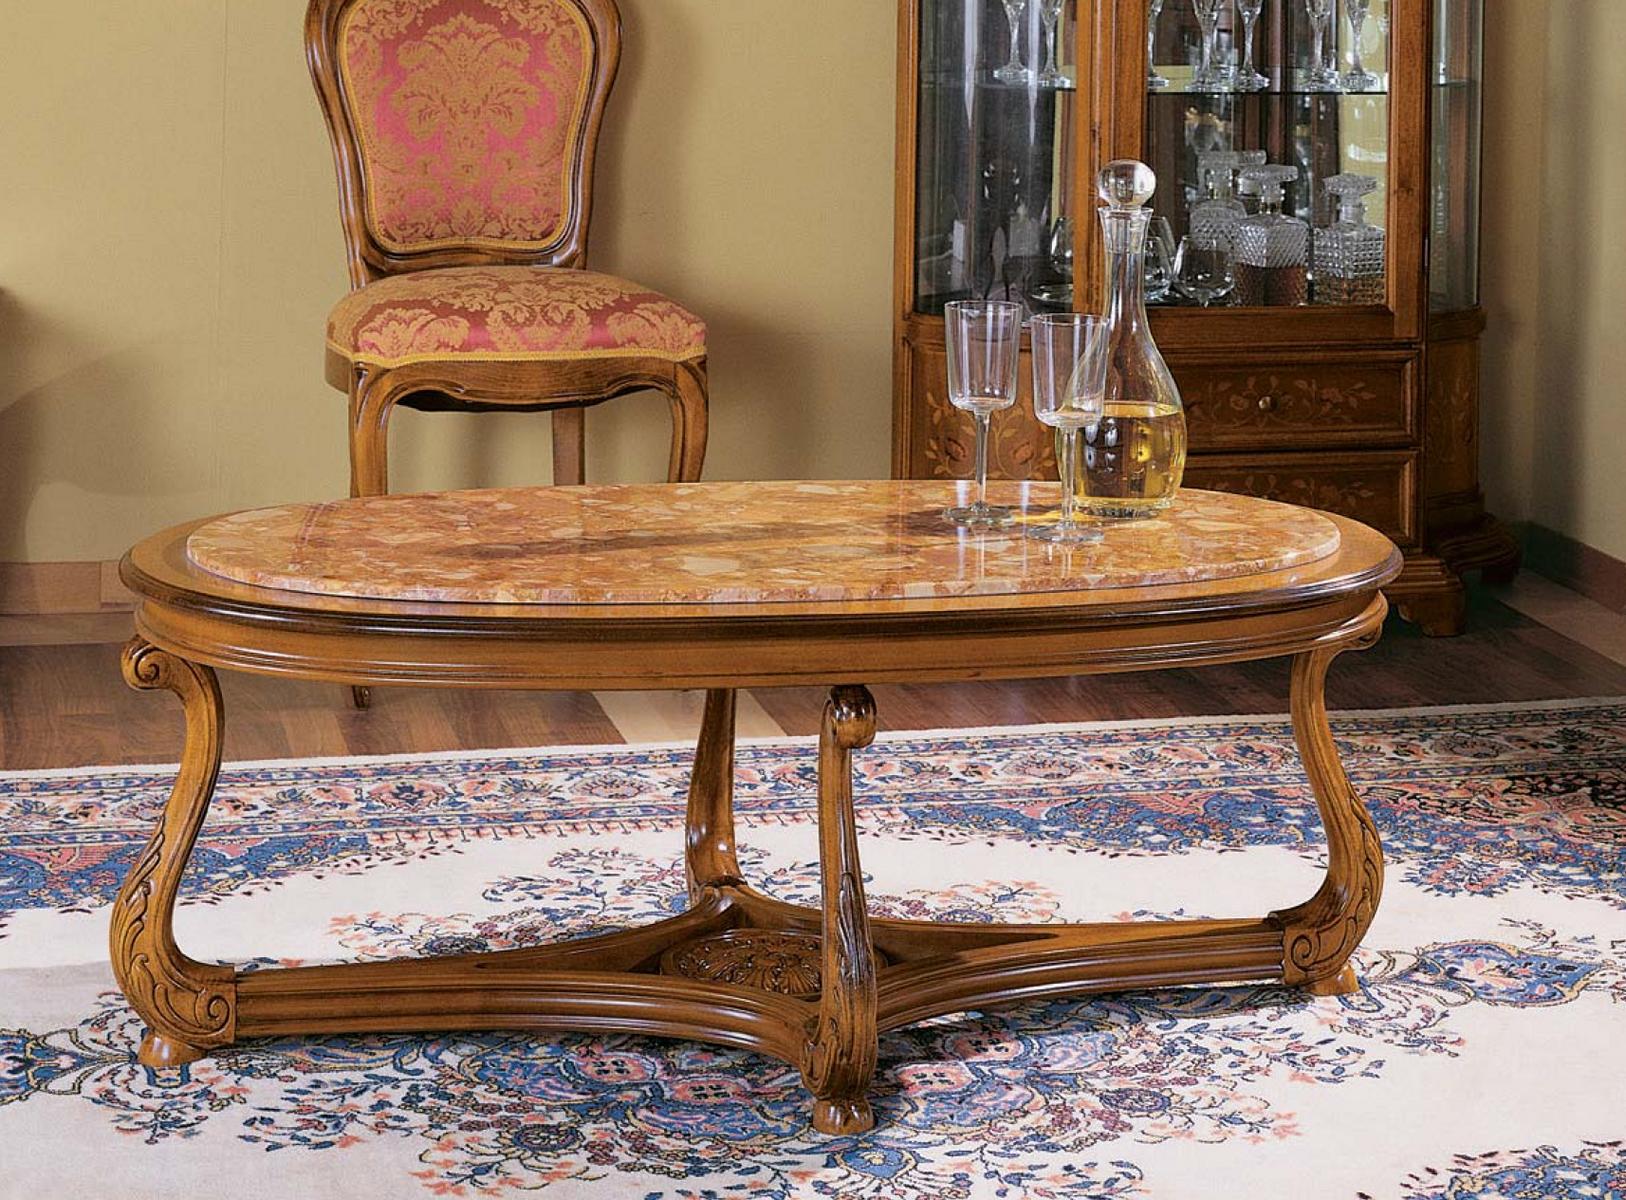 Ovaler Couchtisch Holz Tische Beistelltisch Wohnzimmer Italienische Möbel Tisch